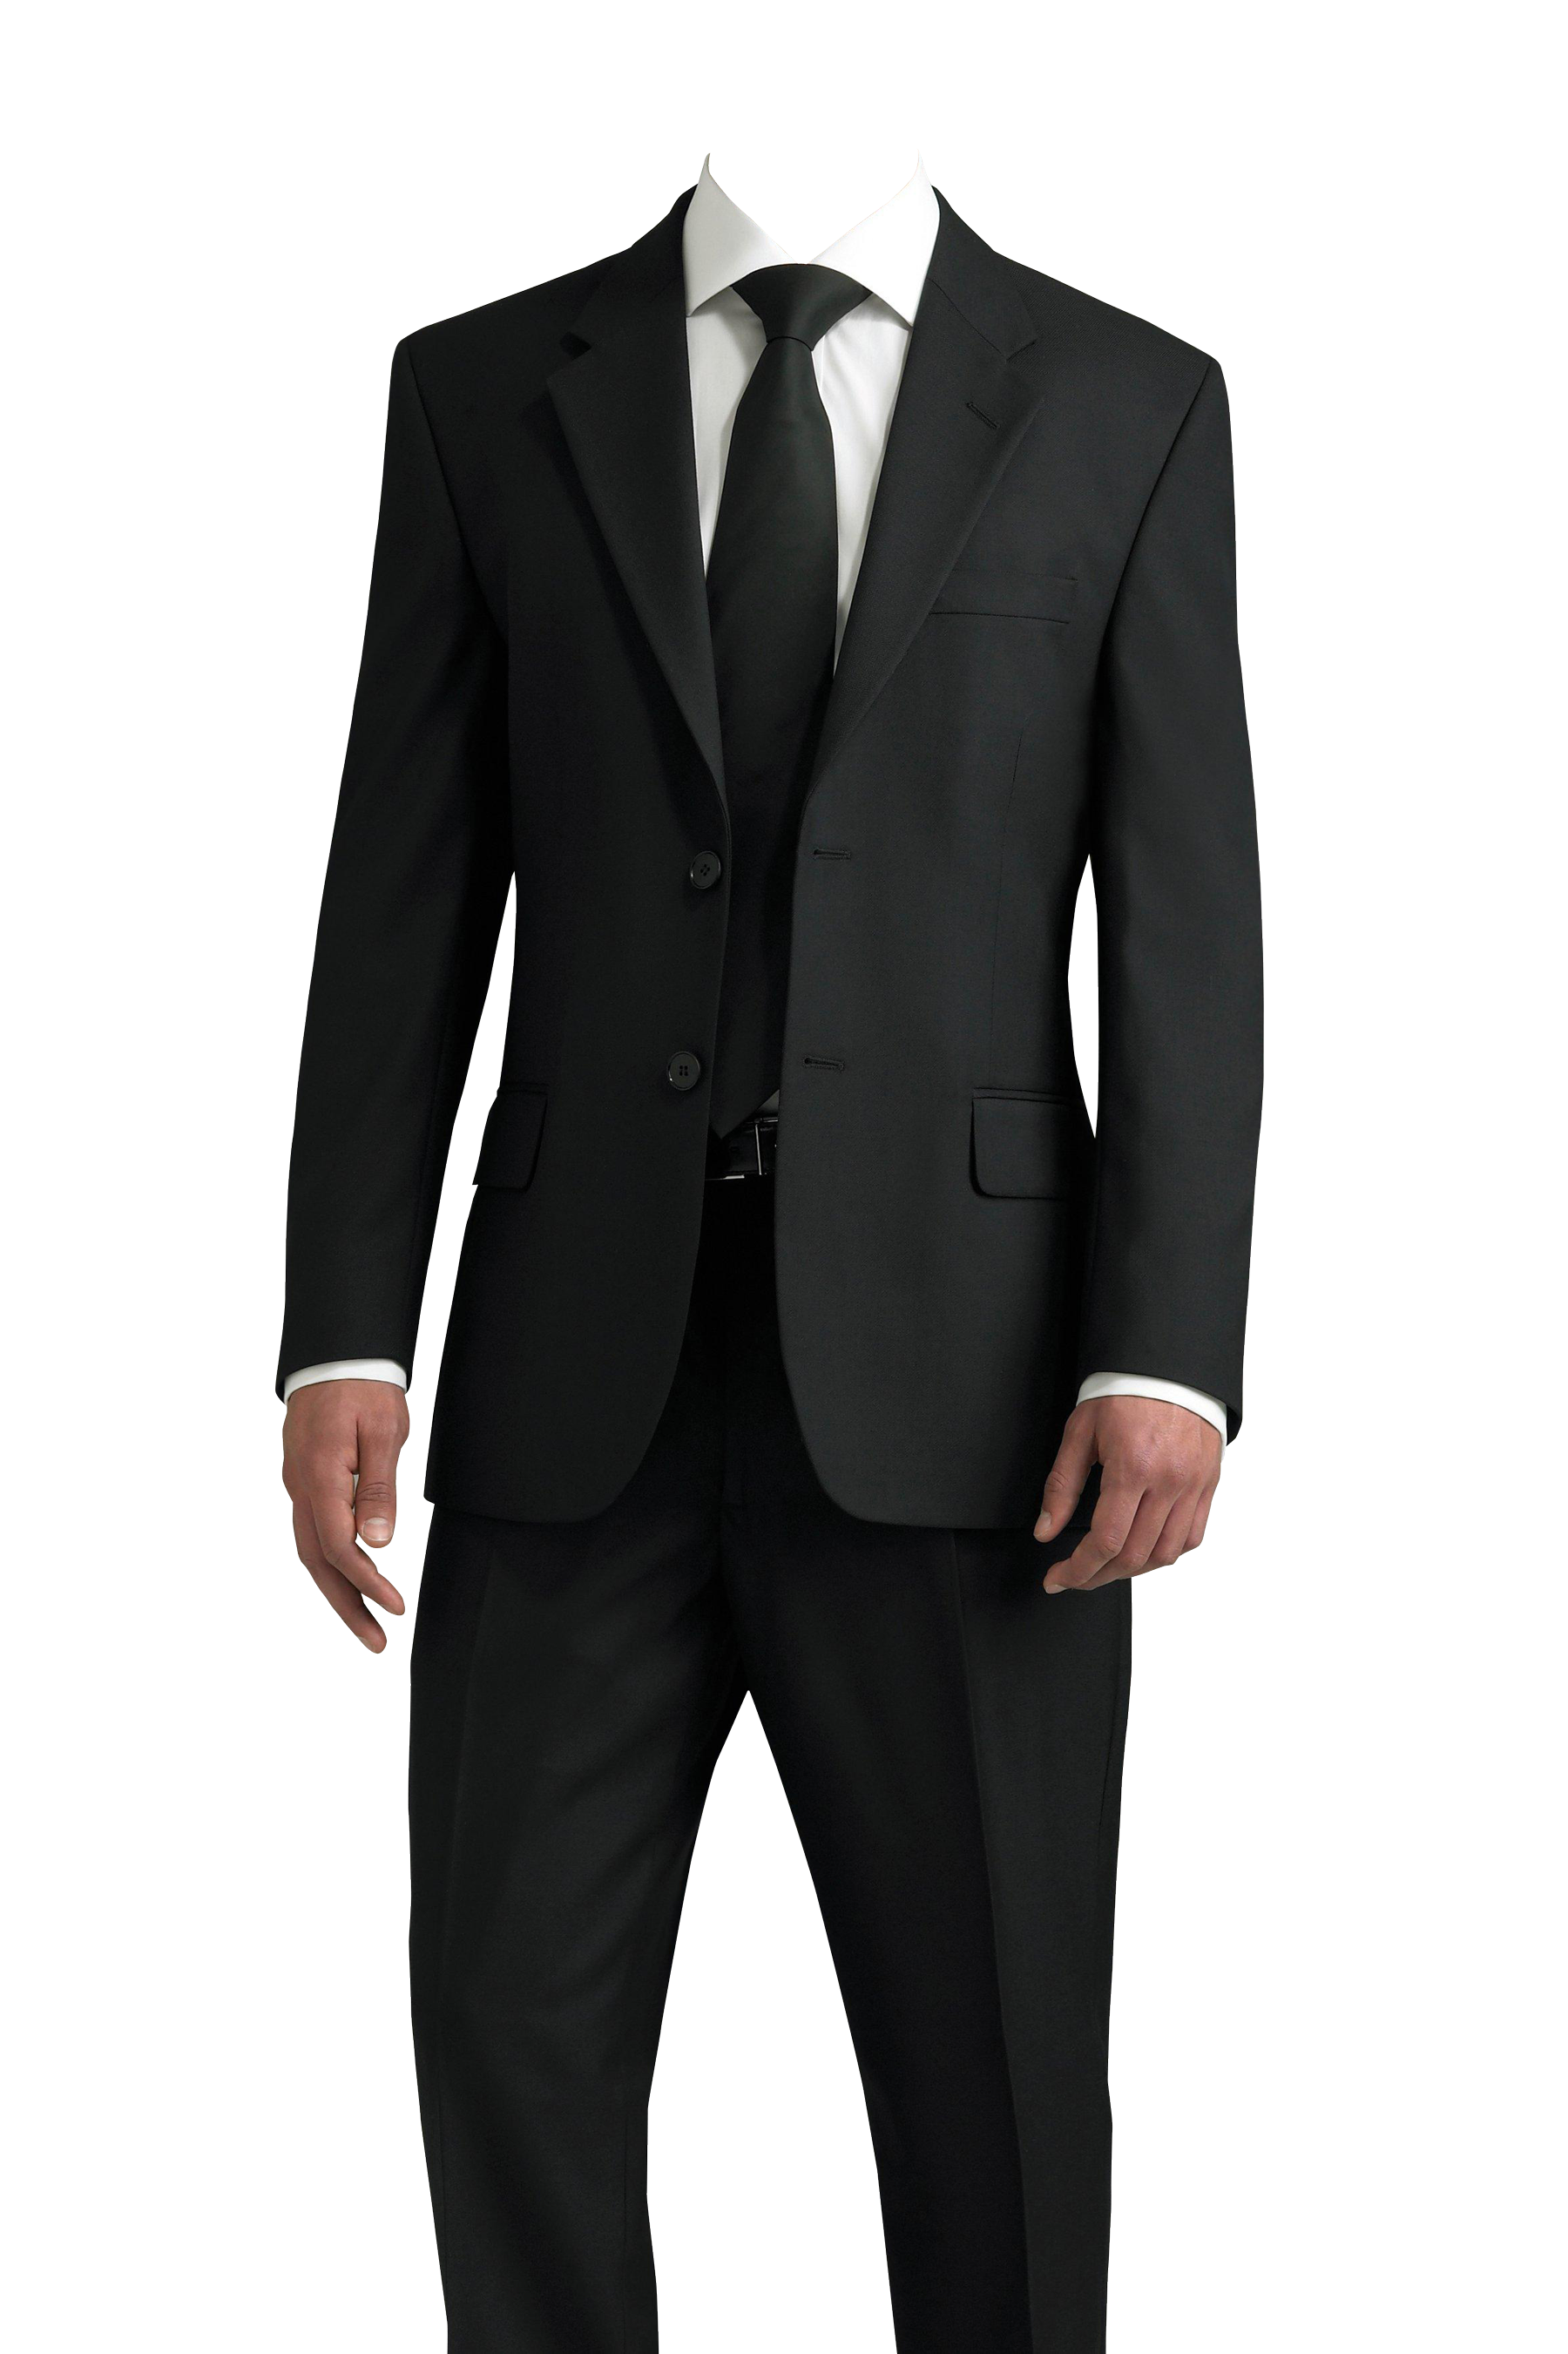 Mann im Anzug-PNG-Bild mit transparentem Hintergrund